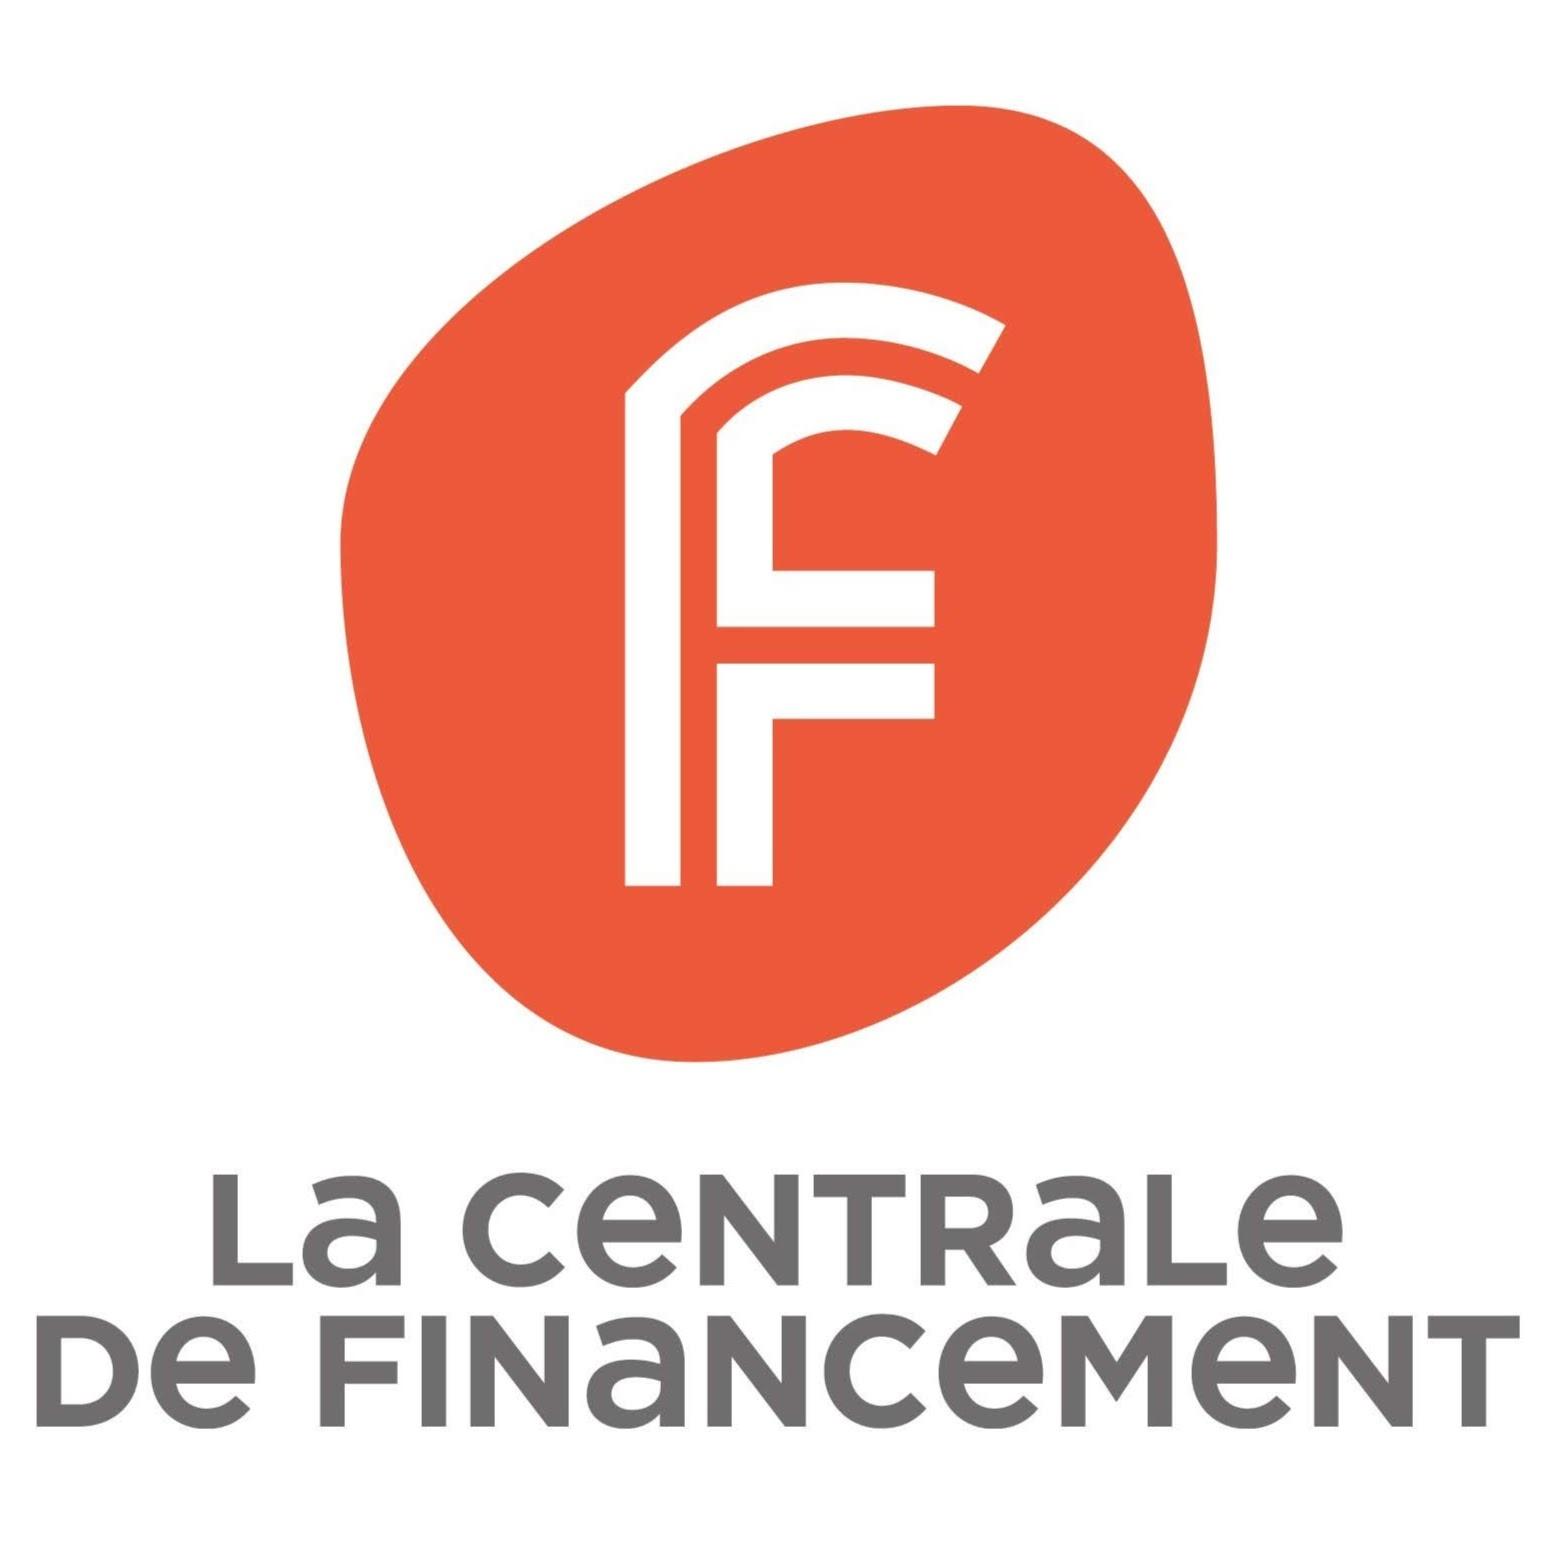 La Centrale De Financement Rennes